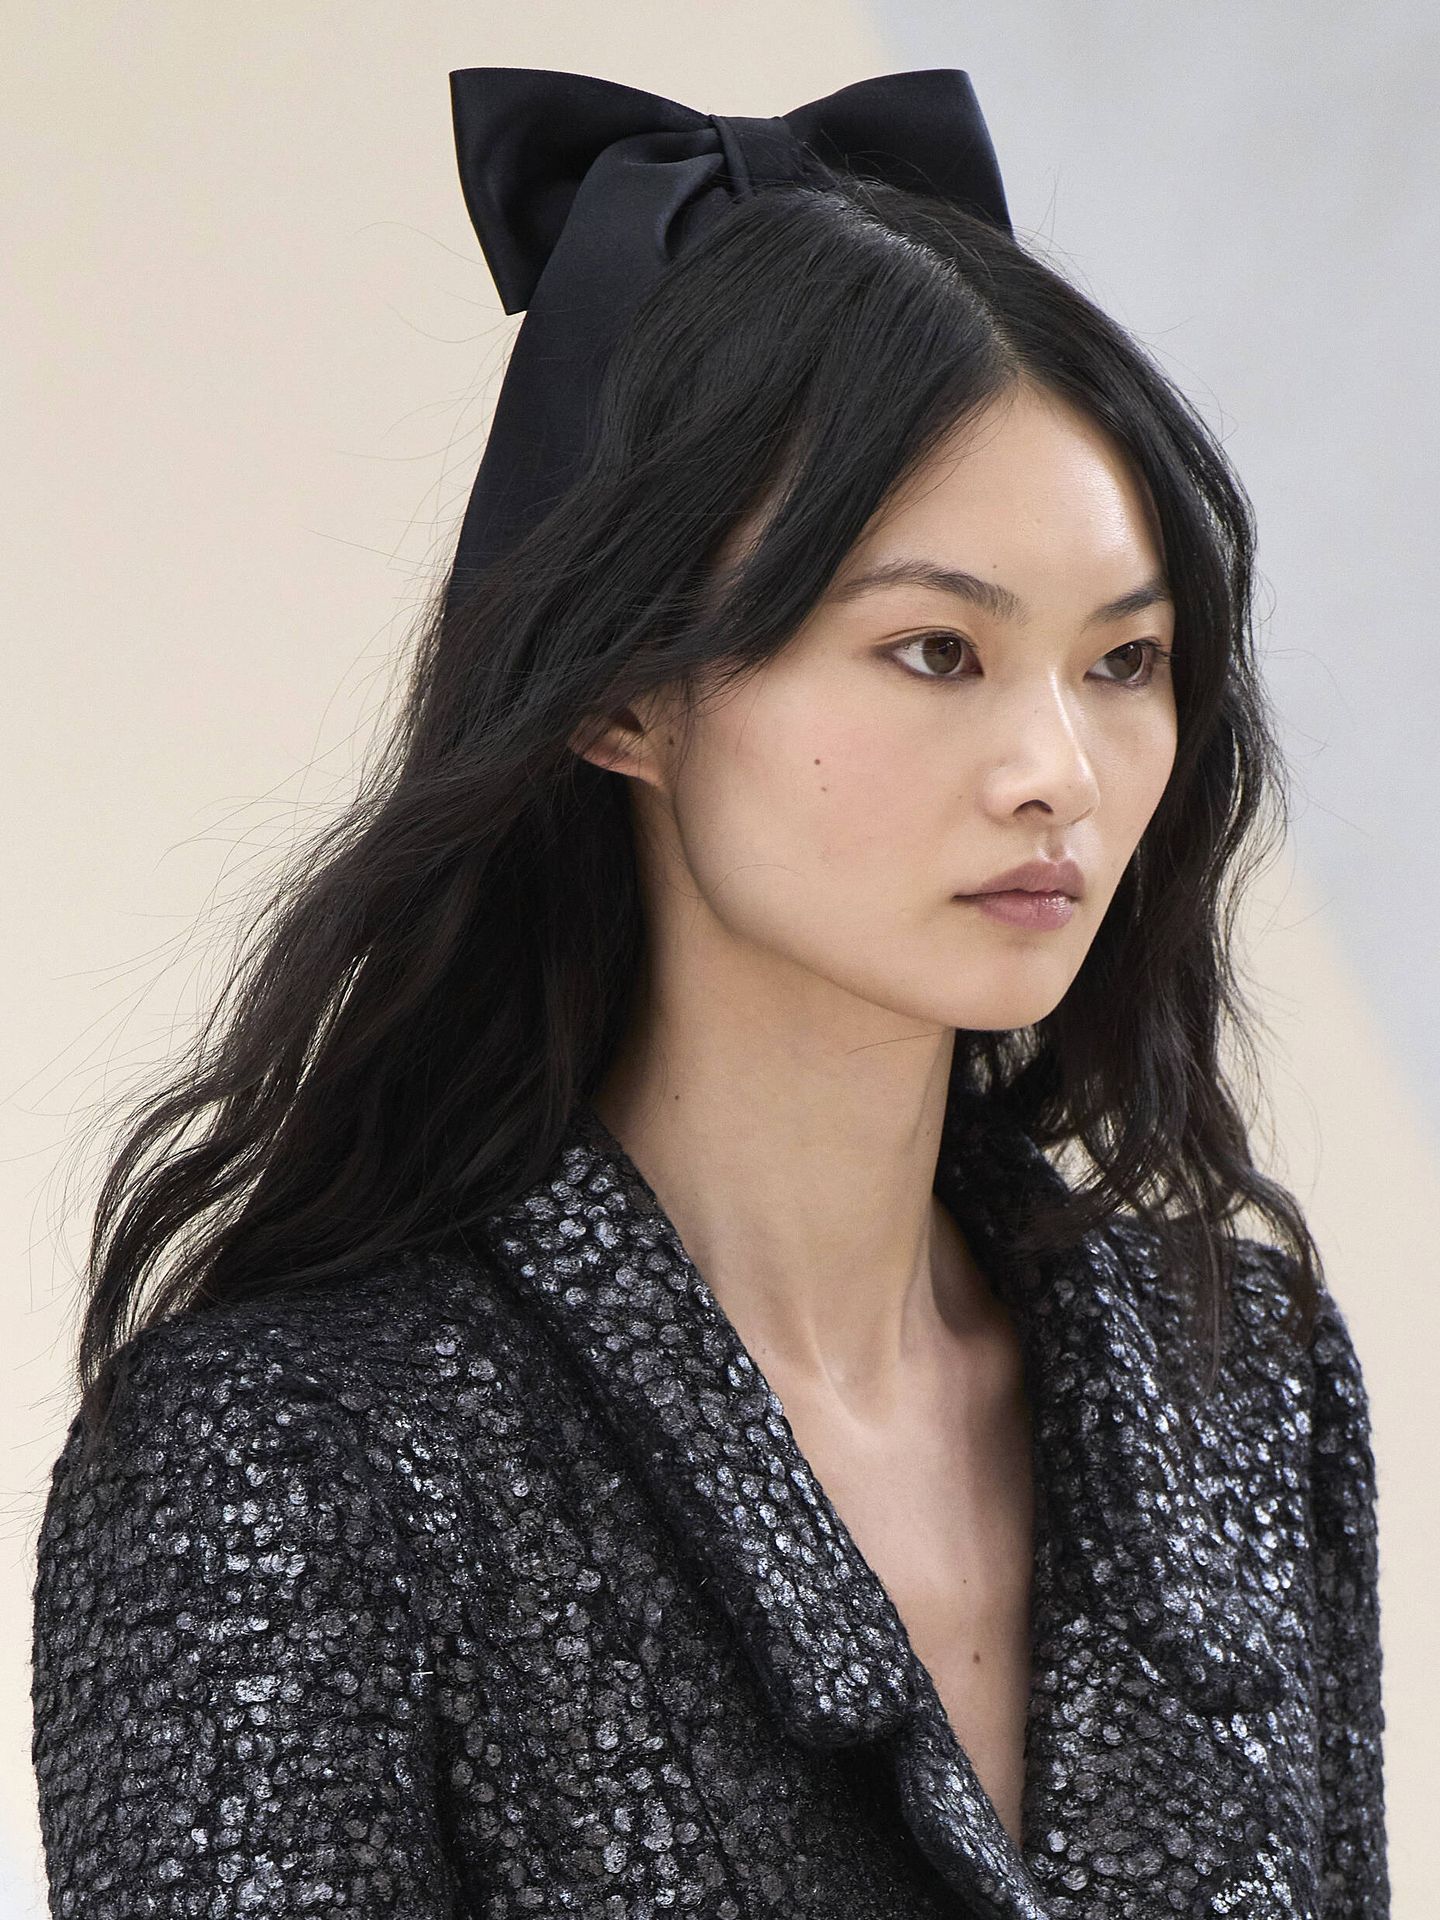 La lazada-tocado coronaba las melenas onduladas del desfile de la alta costura de Chanel para el otoño-invierno 2022/2023. (Imaxtree)